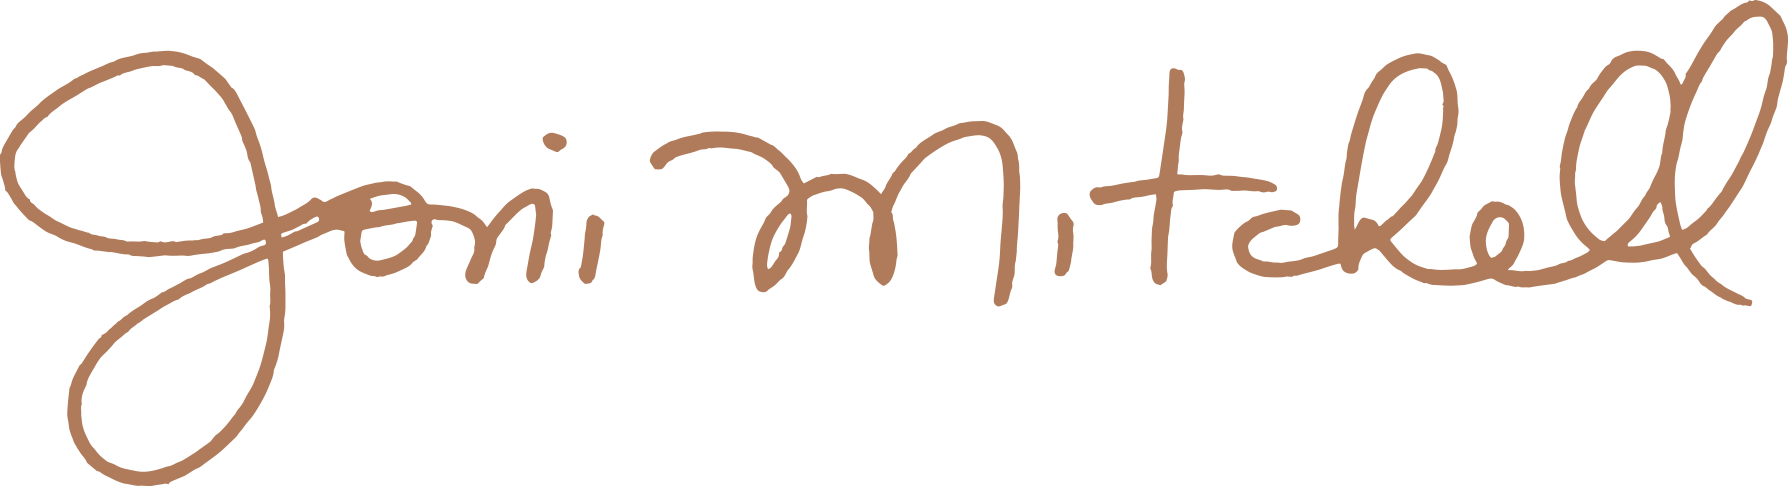 logo jonimitchell